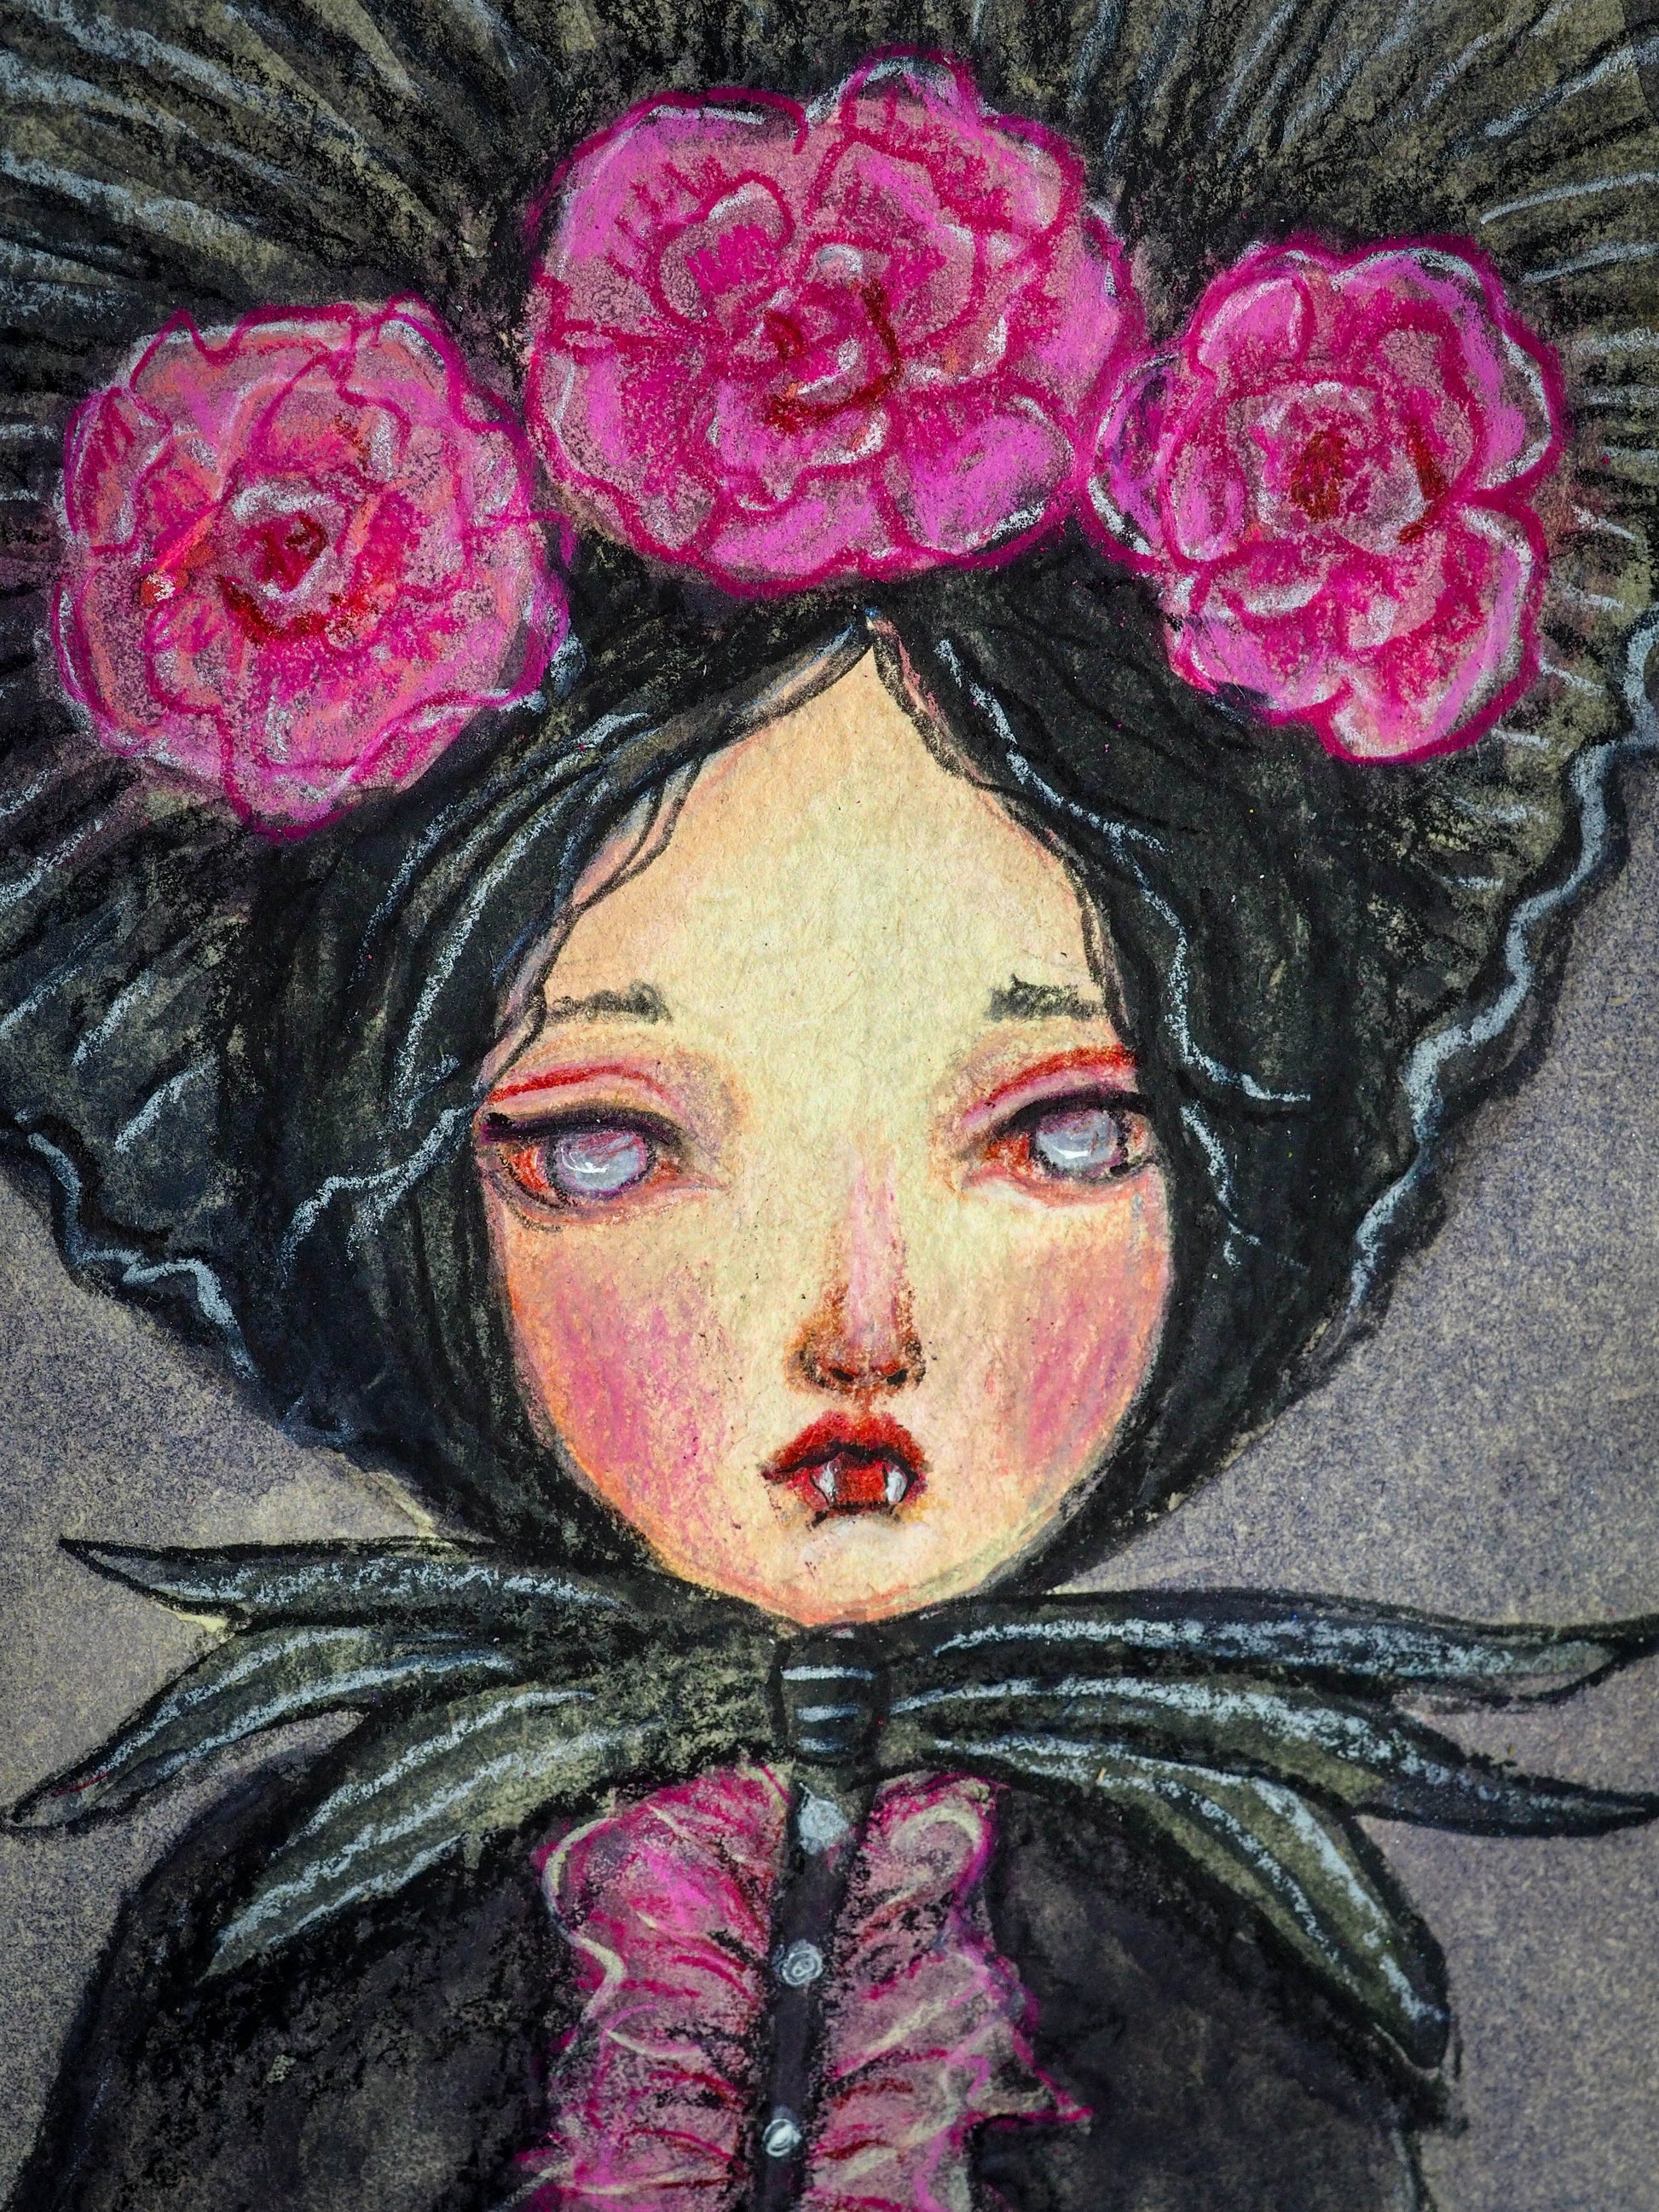 MINA THE VAMPIRE - An original watercolor painting on vintage book cover by Danita Art, Original Art by Danita Art